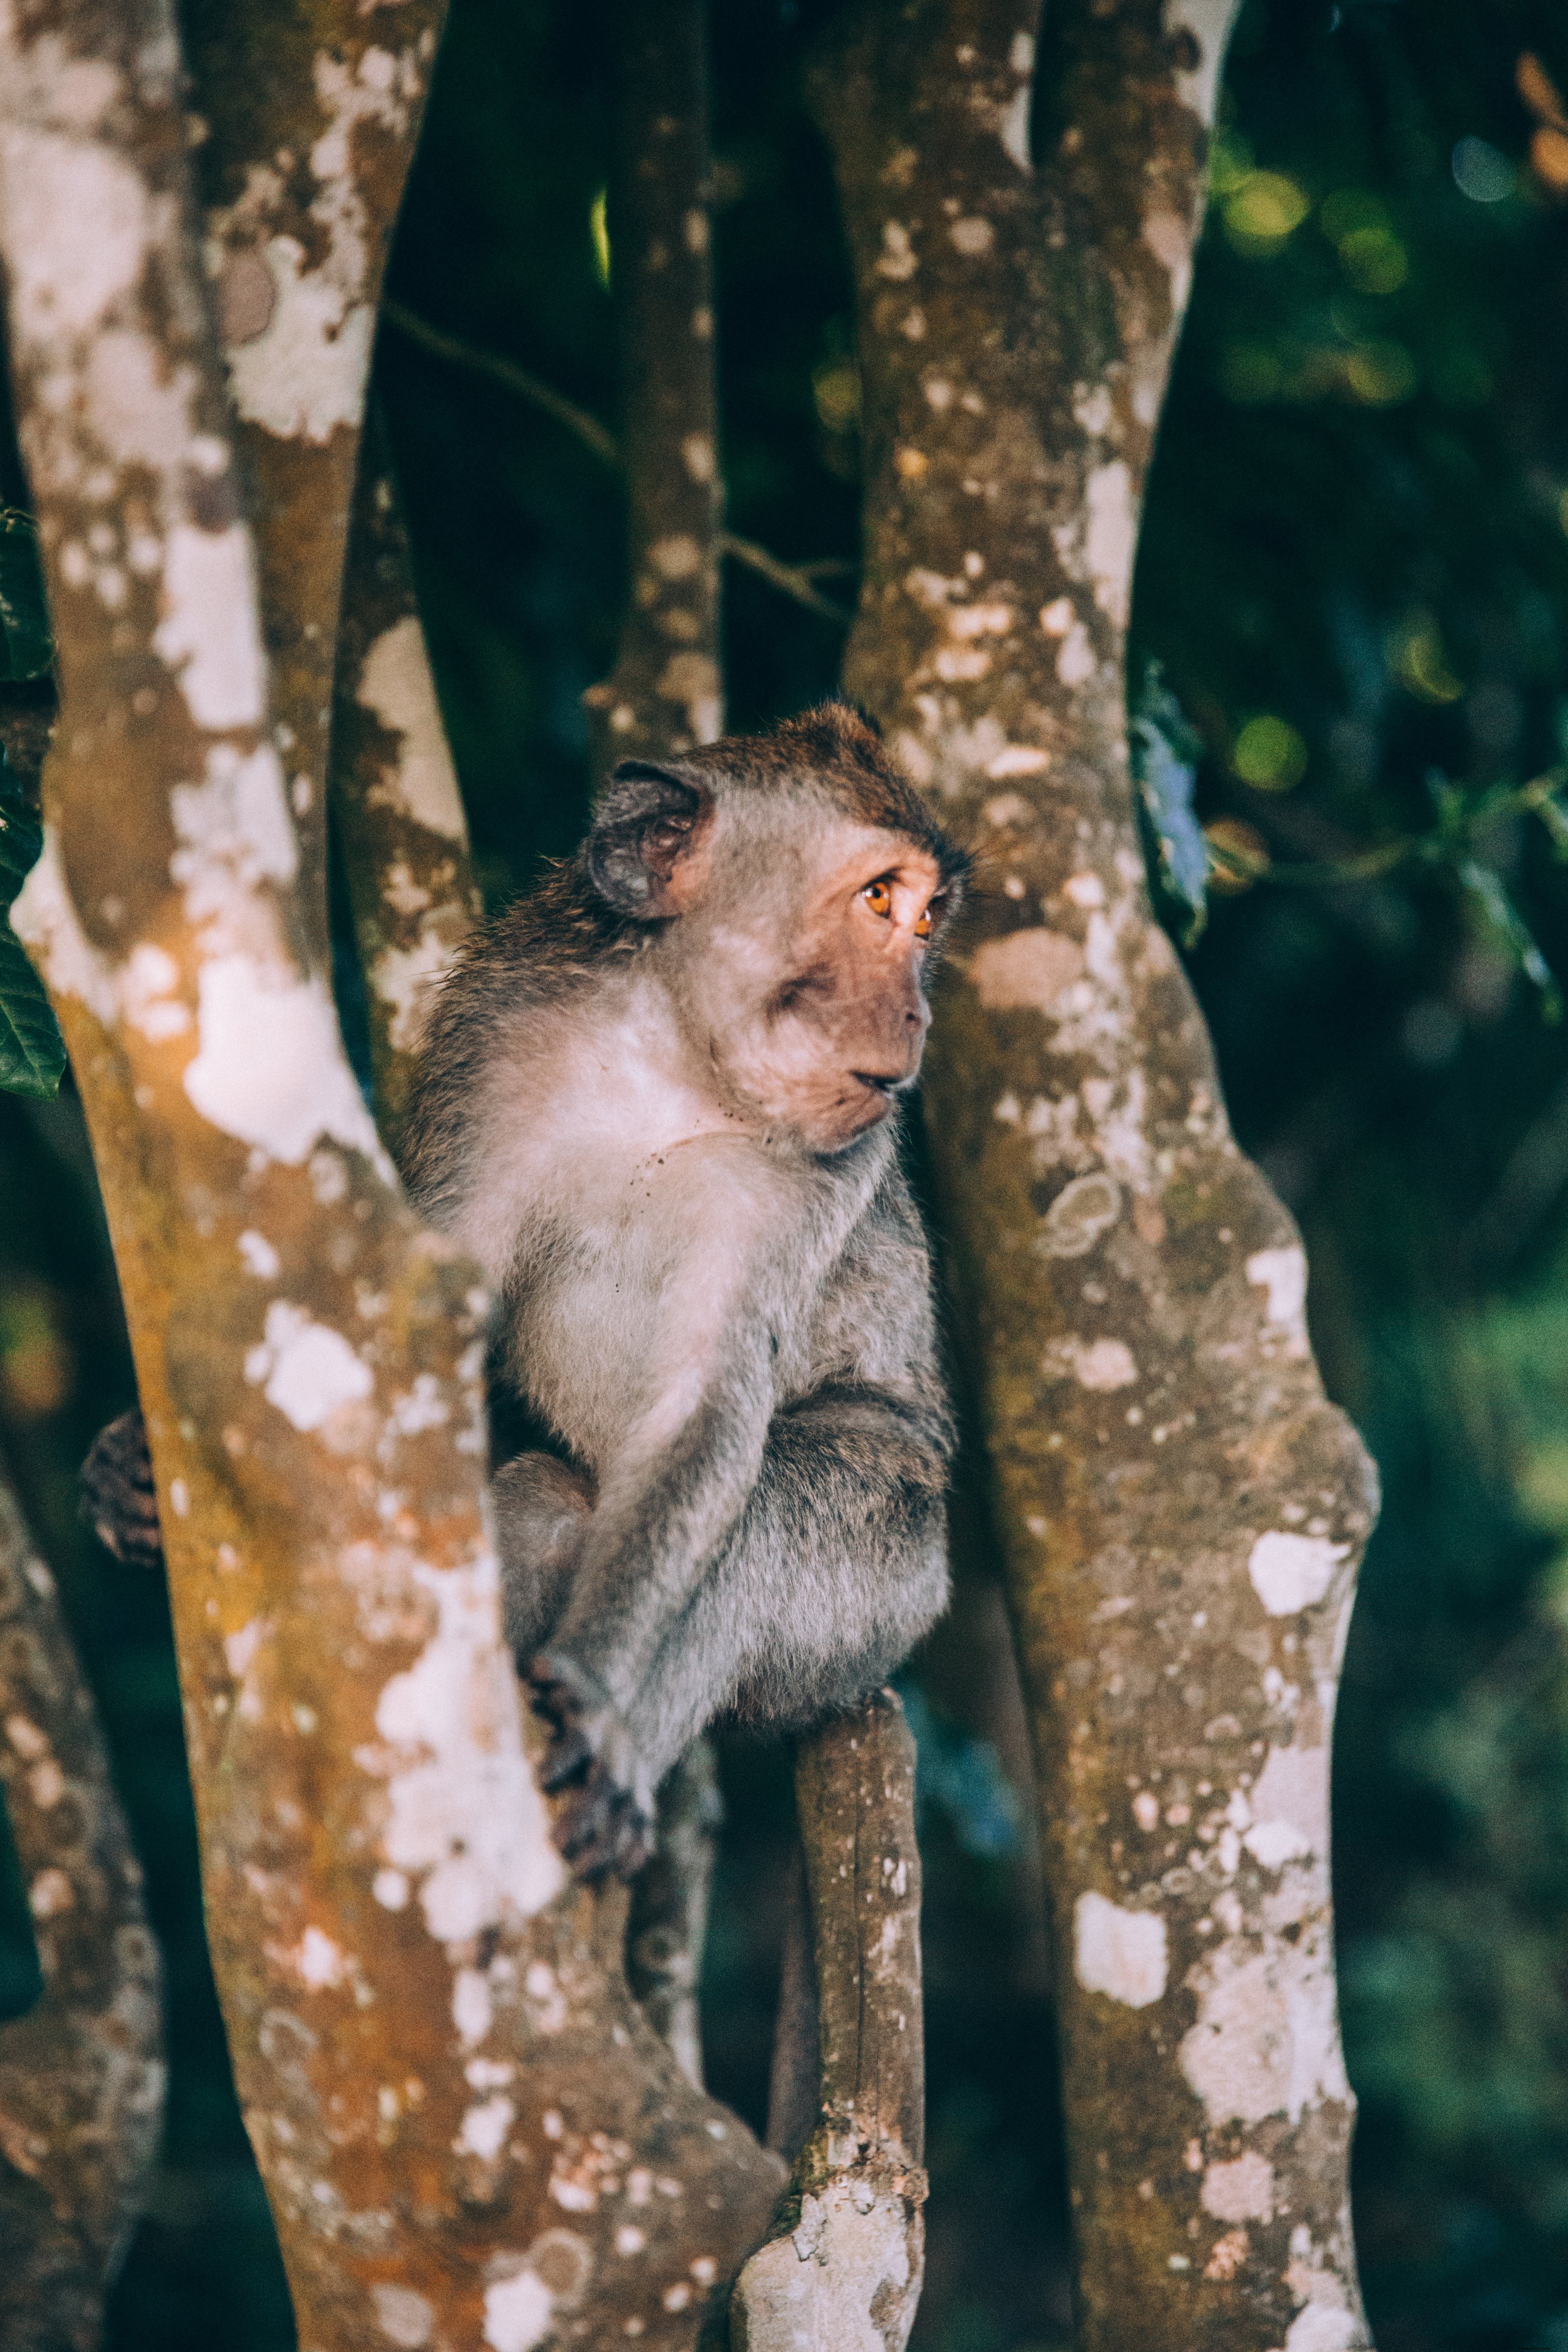 Bayi Monyet Terlihat Terkejut Di Foto Pohonnya